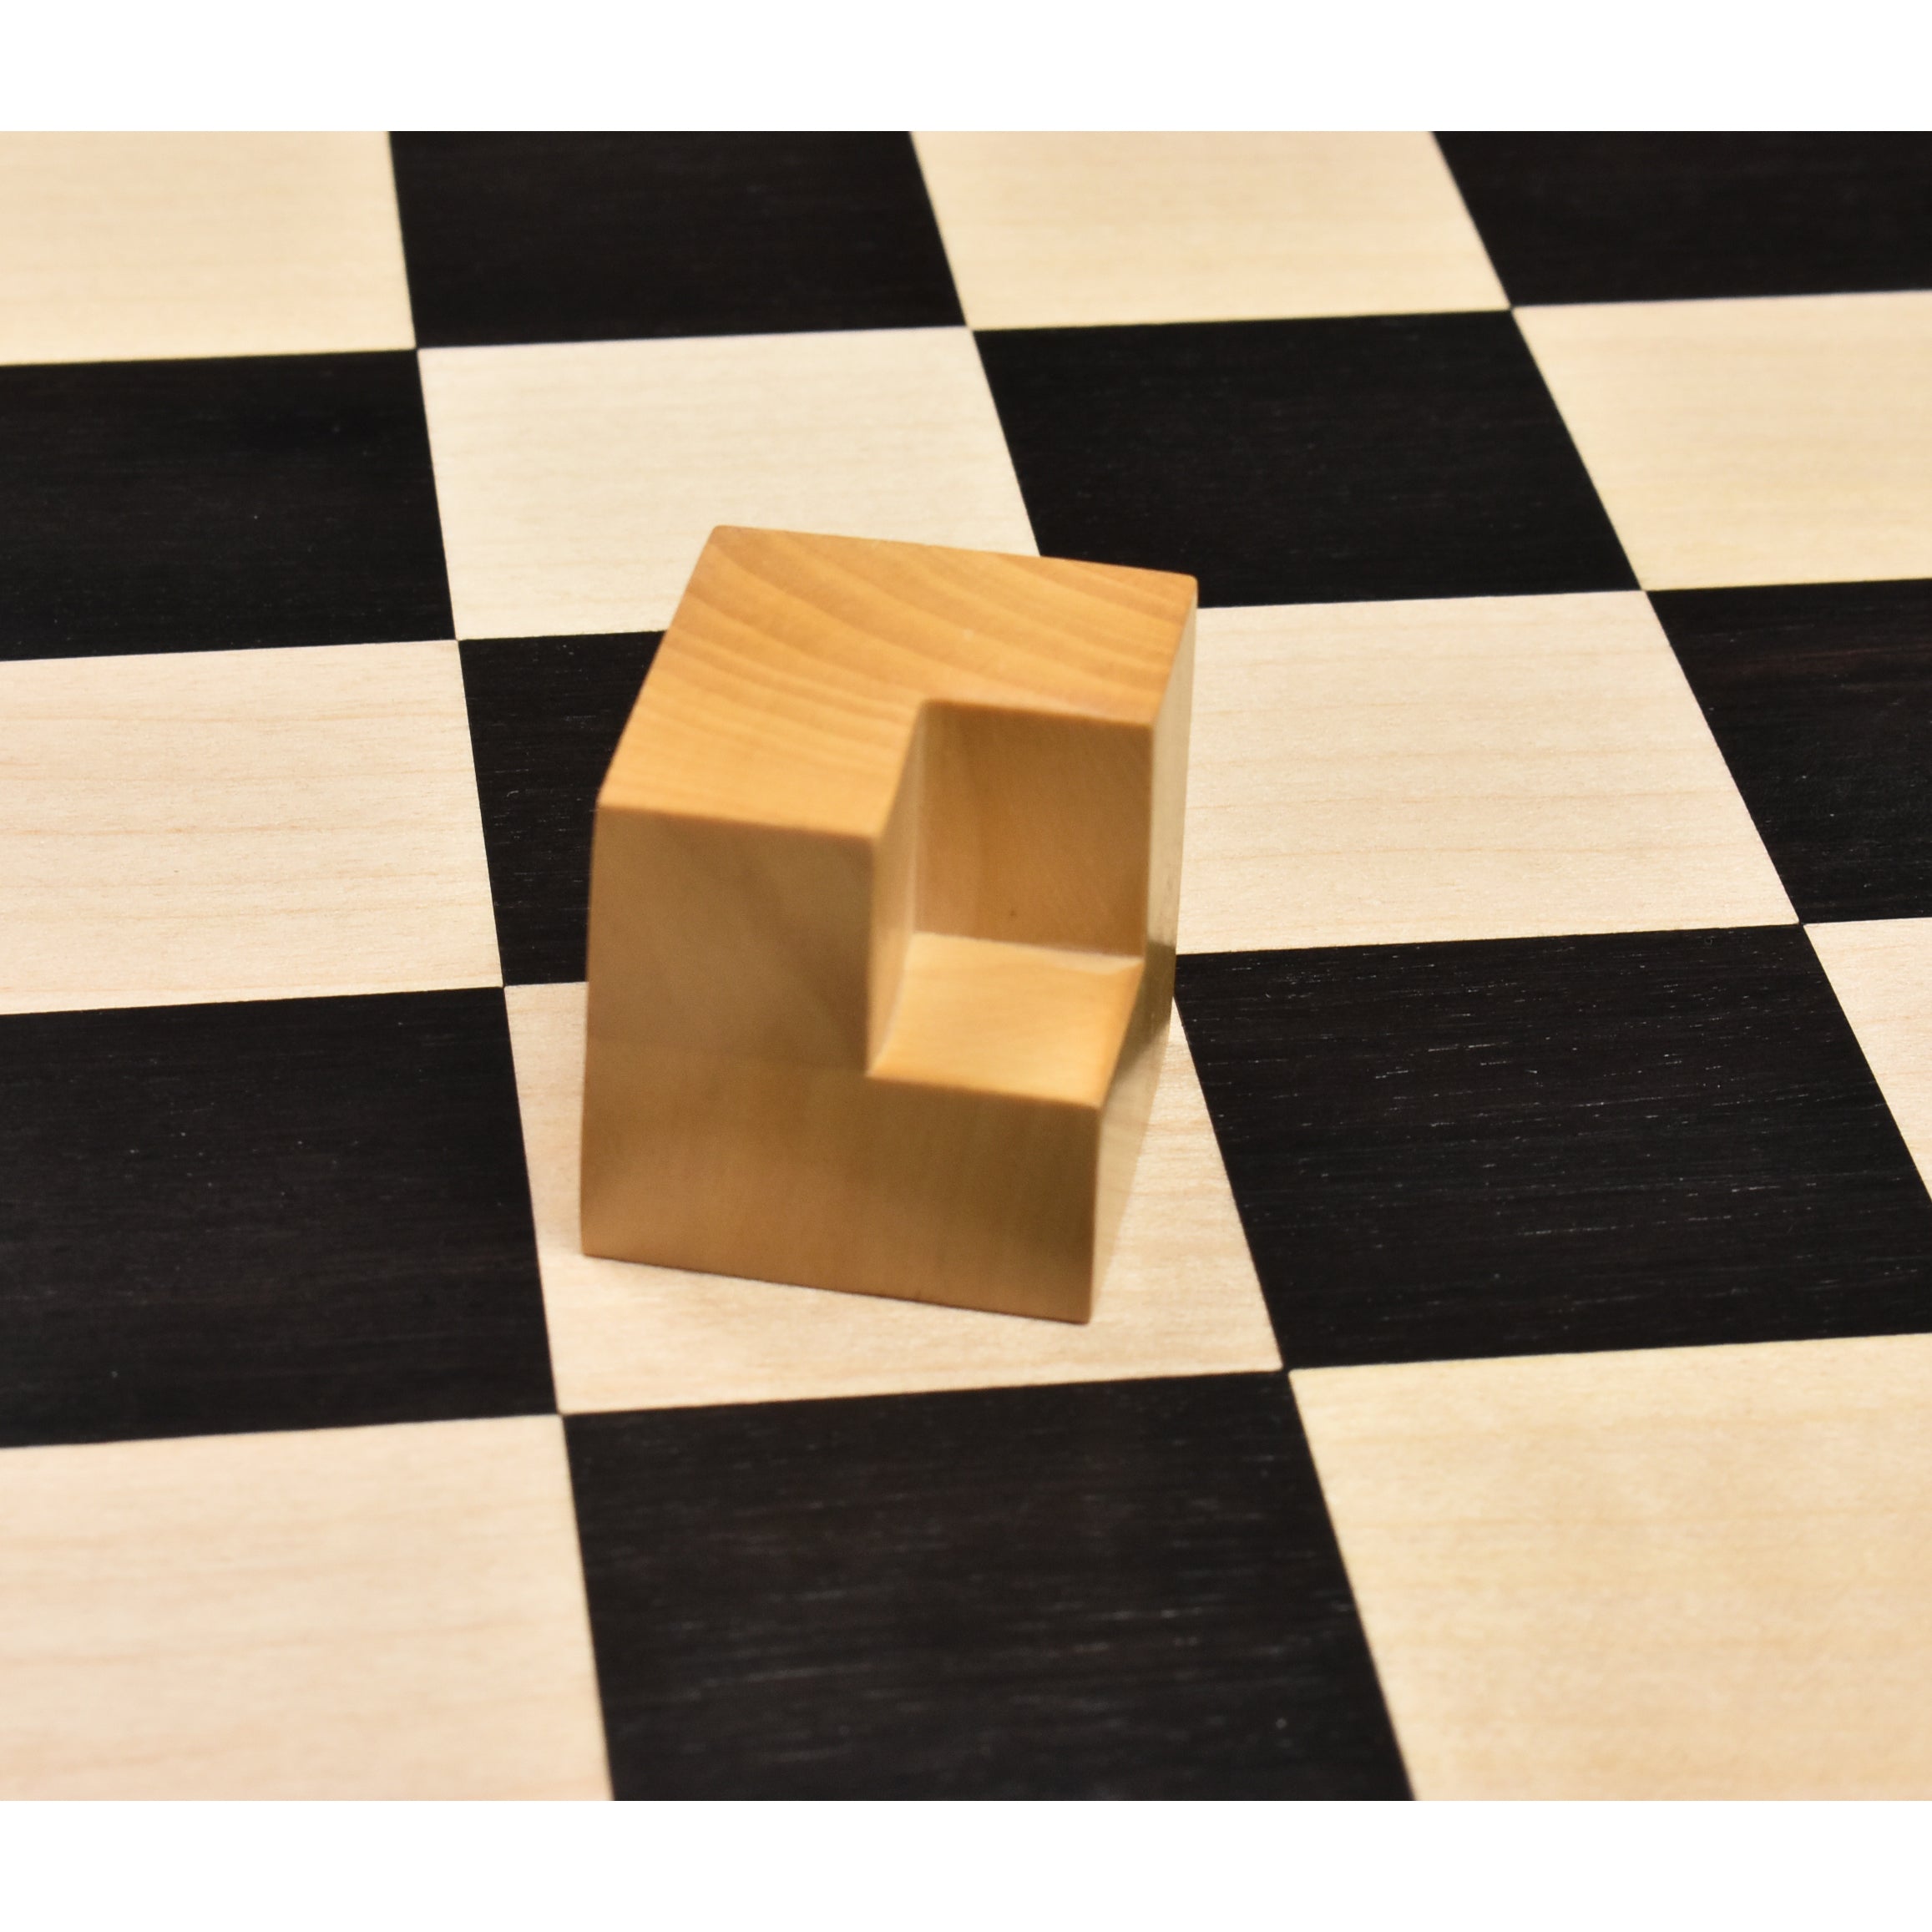 1923 Bauhaus Combo Chess Set | Royalchessmall | Wood Chess Sets | Luxury Chess Pieces